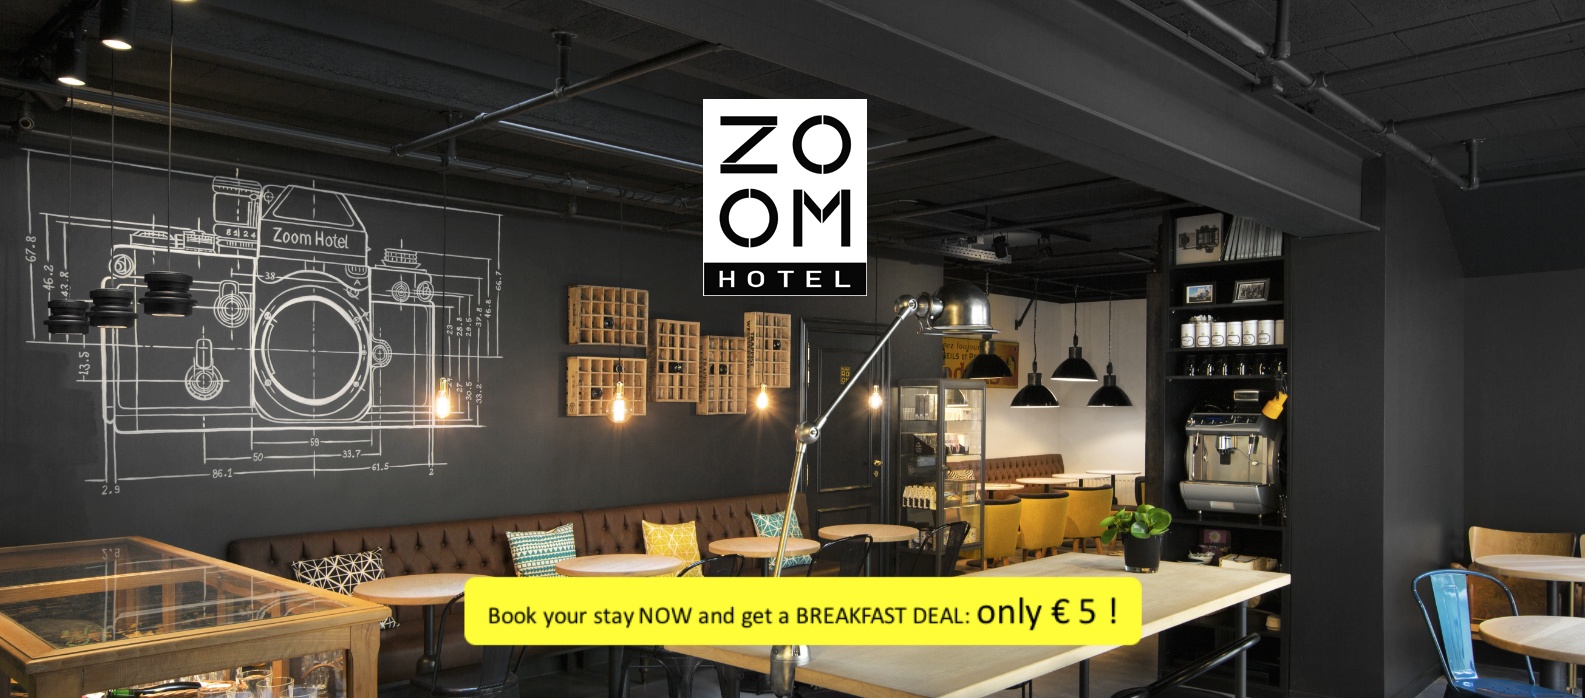 Los maravillosos hoteles de Bruselas: El Zoom hotel en Bruselas